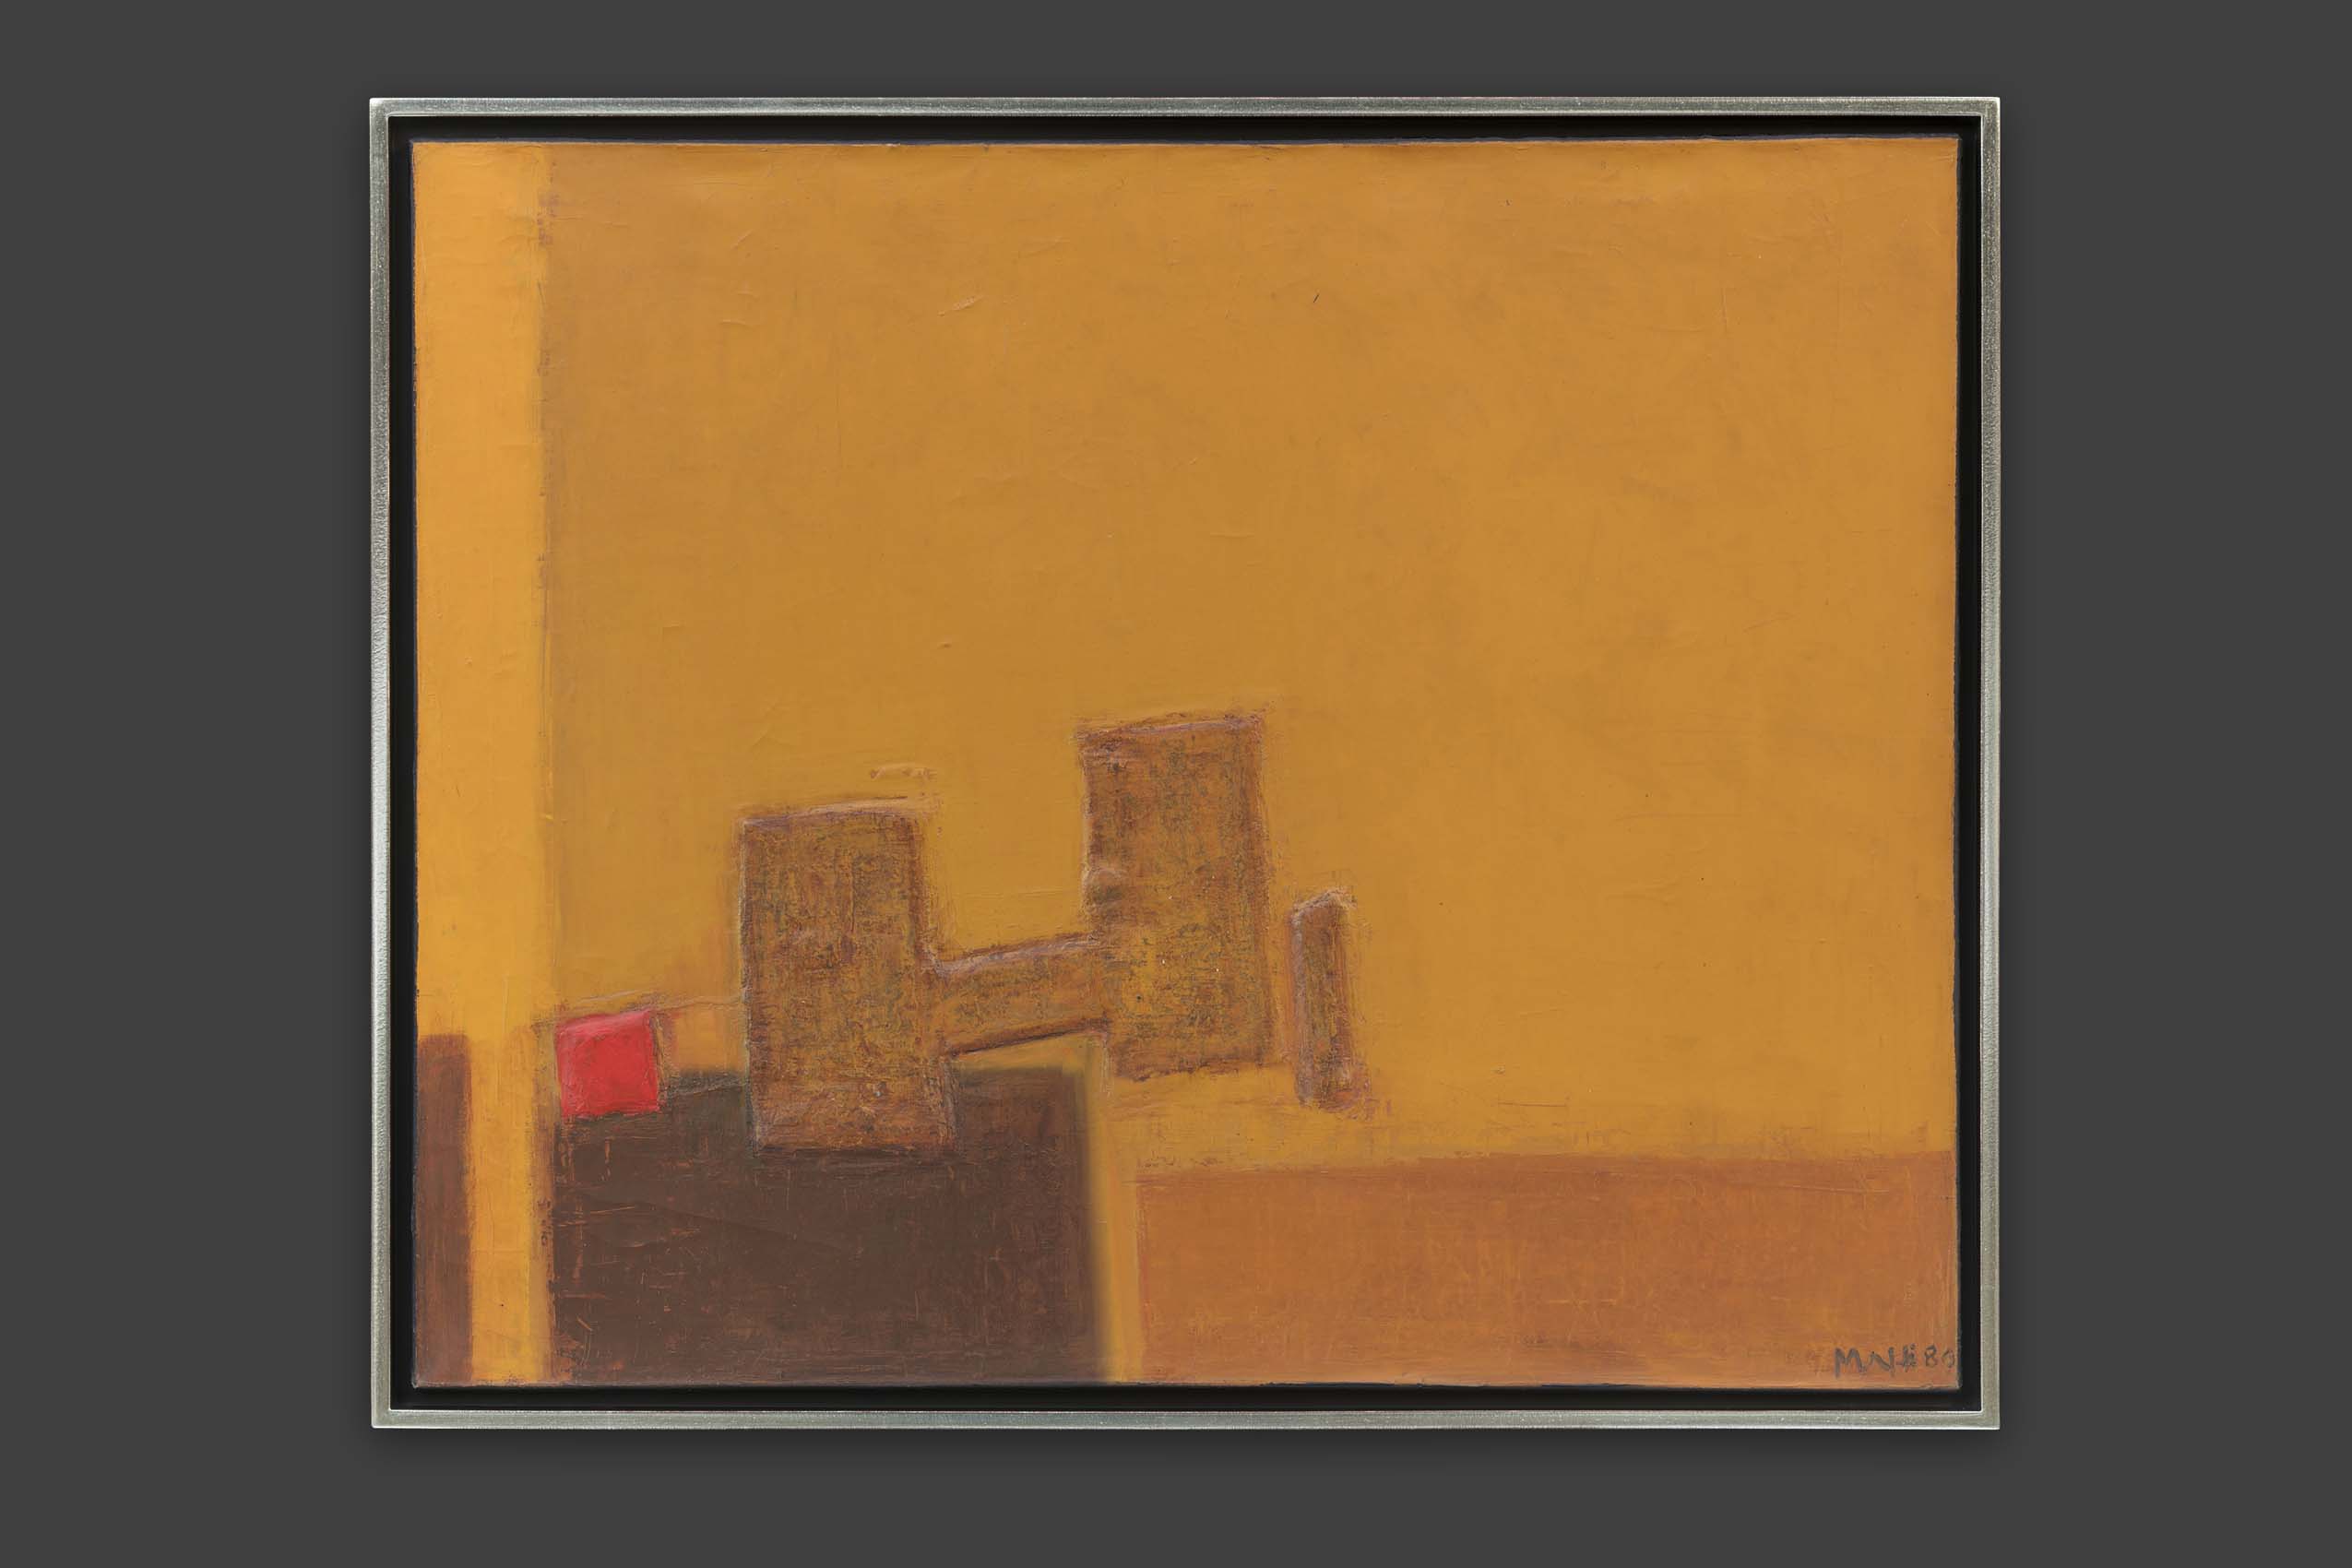 Mafli Walter - Abstraction sur de l’orange et jaune - Encadré